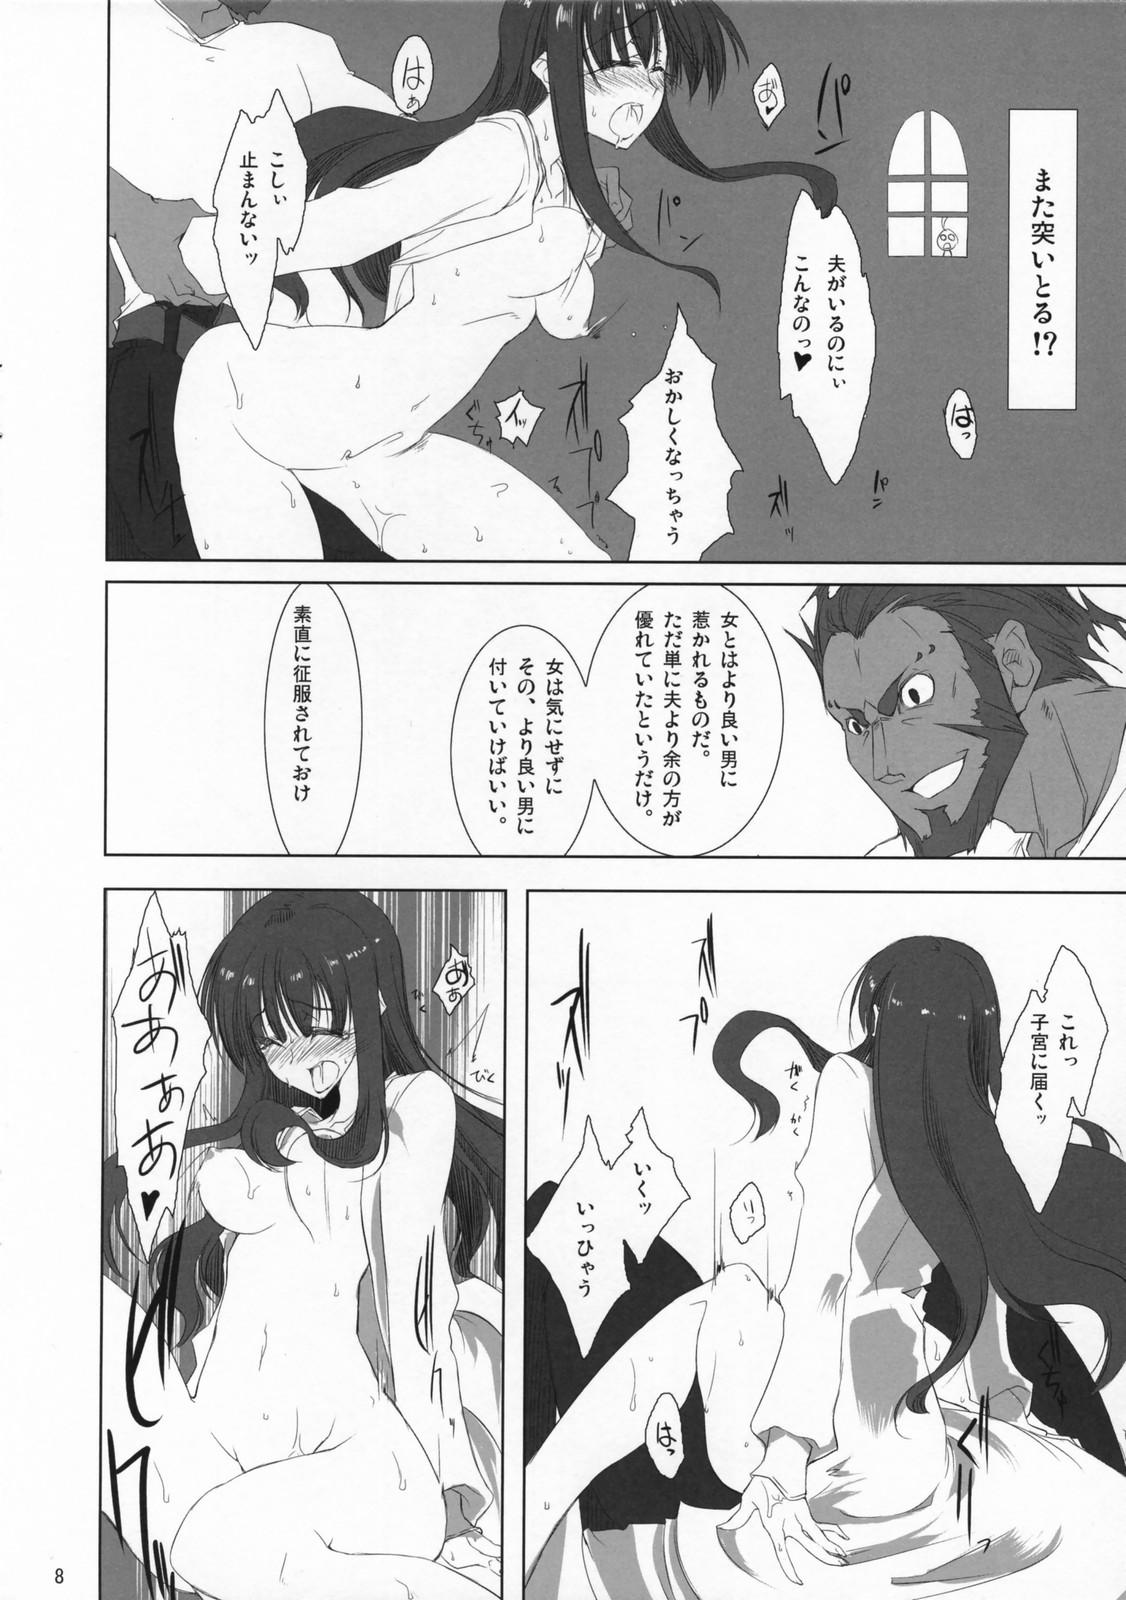 Ex Girlfriends Fate/Zatto - Fate stay night Fate zero Morrita - Page 7